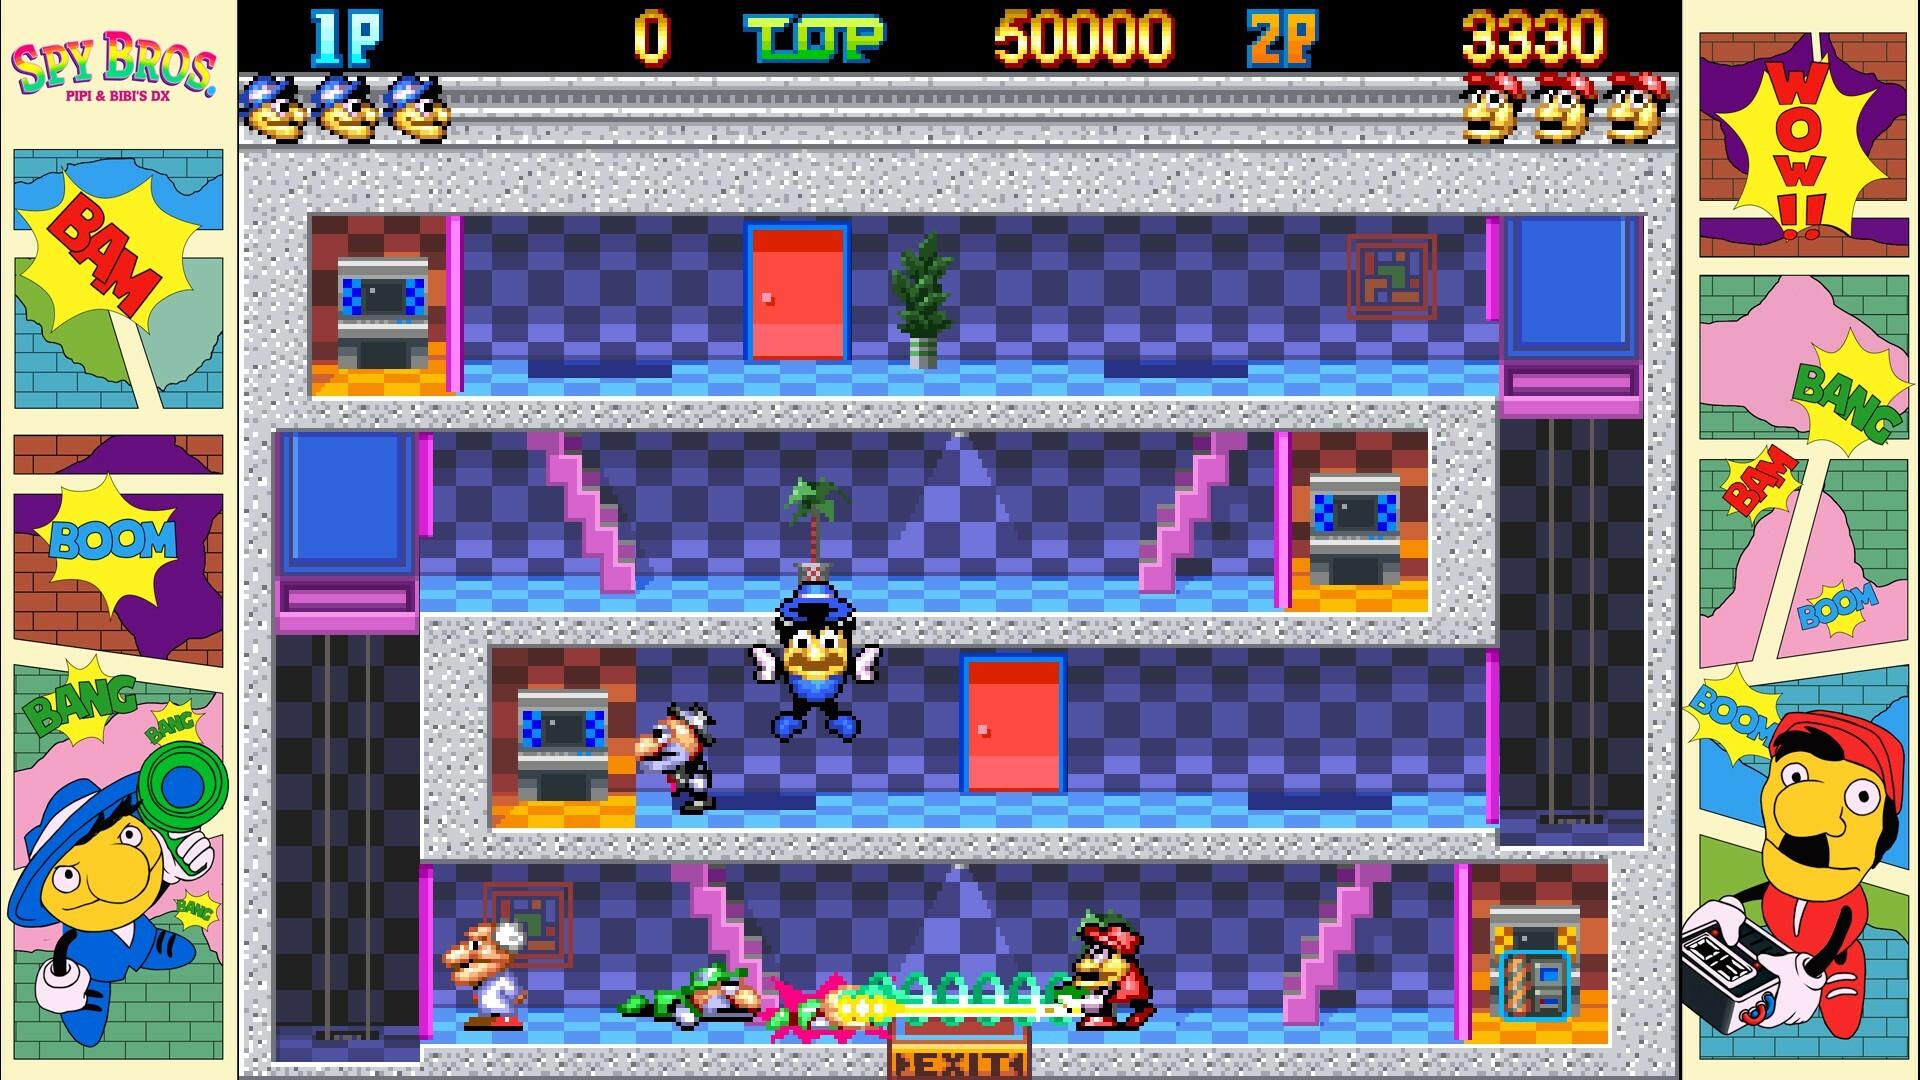 Spy Bros. (Pipi & Bibi's DX) screenshot game